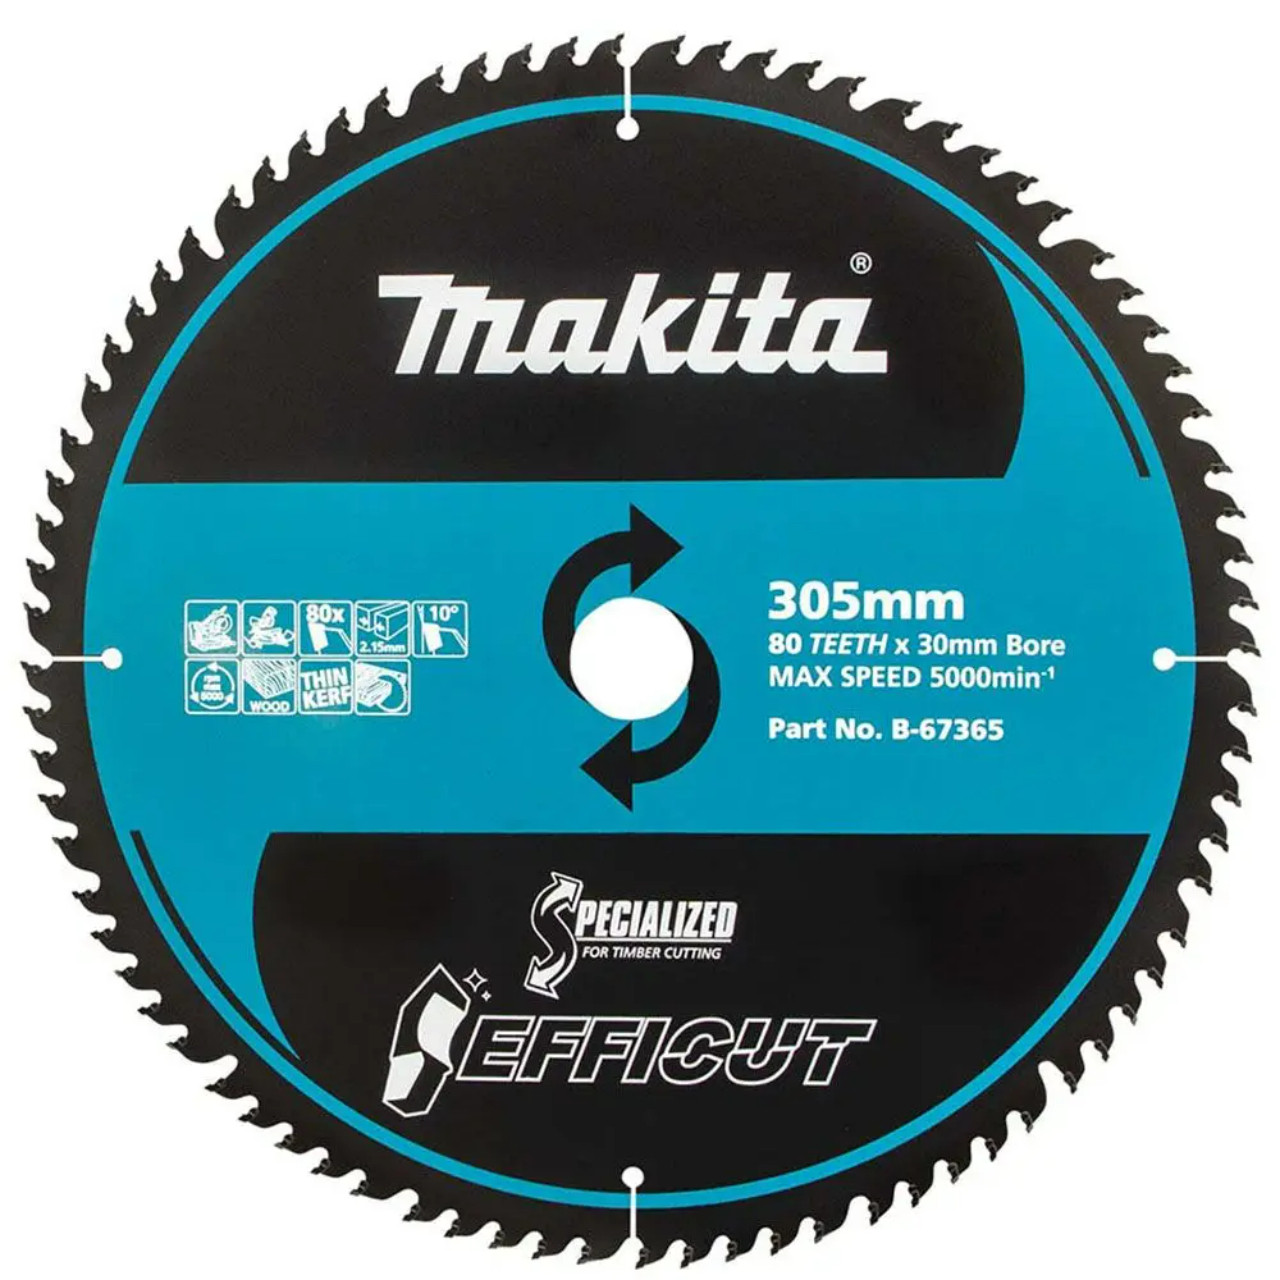 Makita Efficut 305mm X 30 X 80t Tct Saw Blade